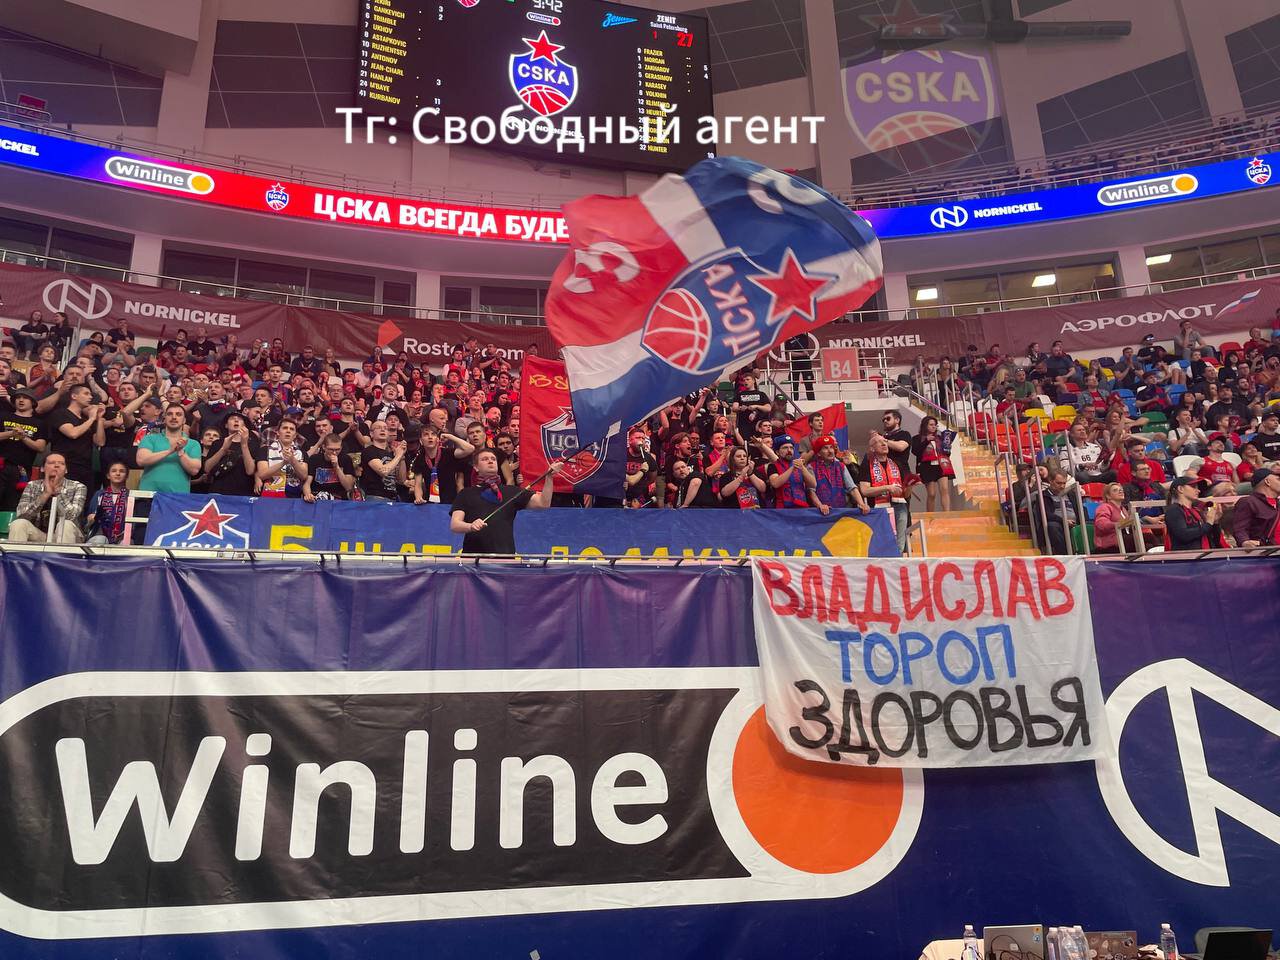 Болельщики баскетбольного ЦСКА поддержали Торопа, вывесив плакат на матче с «Зенитом»